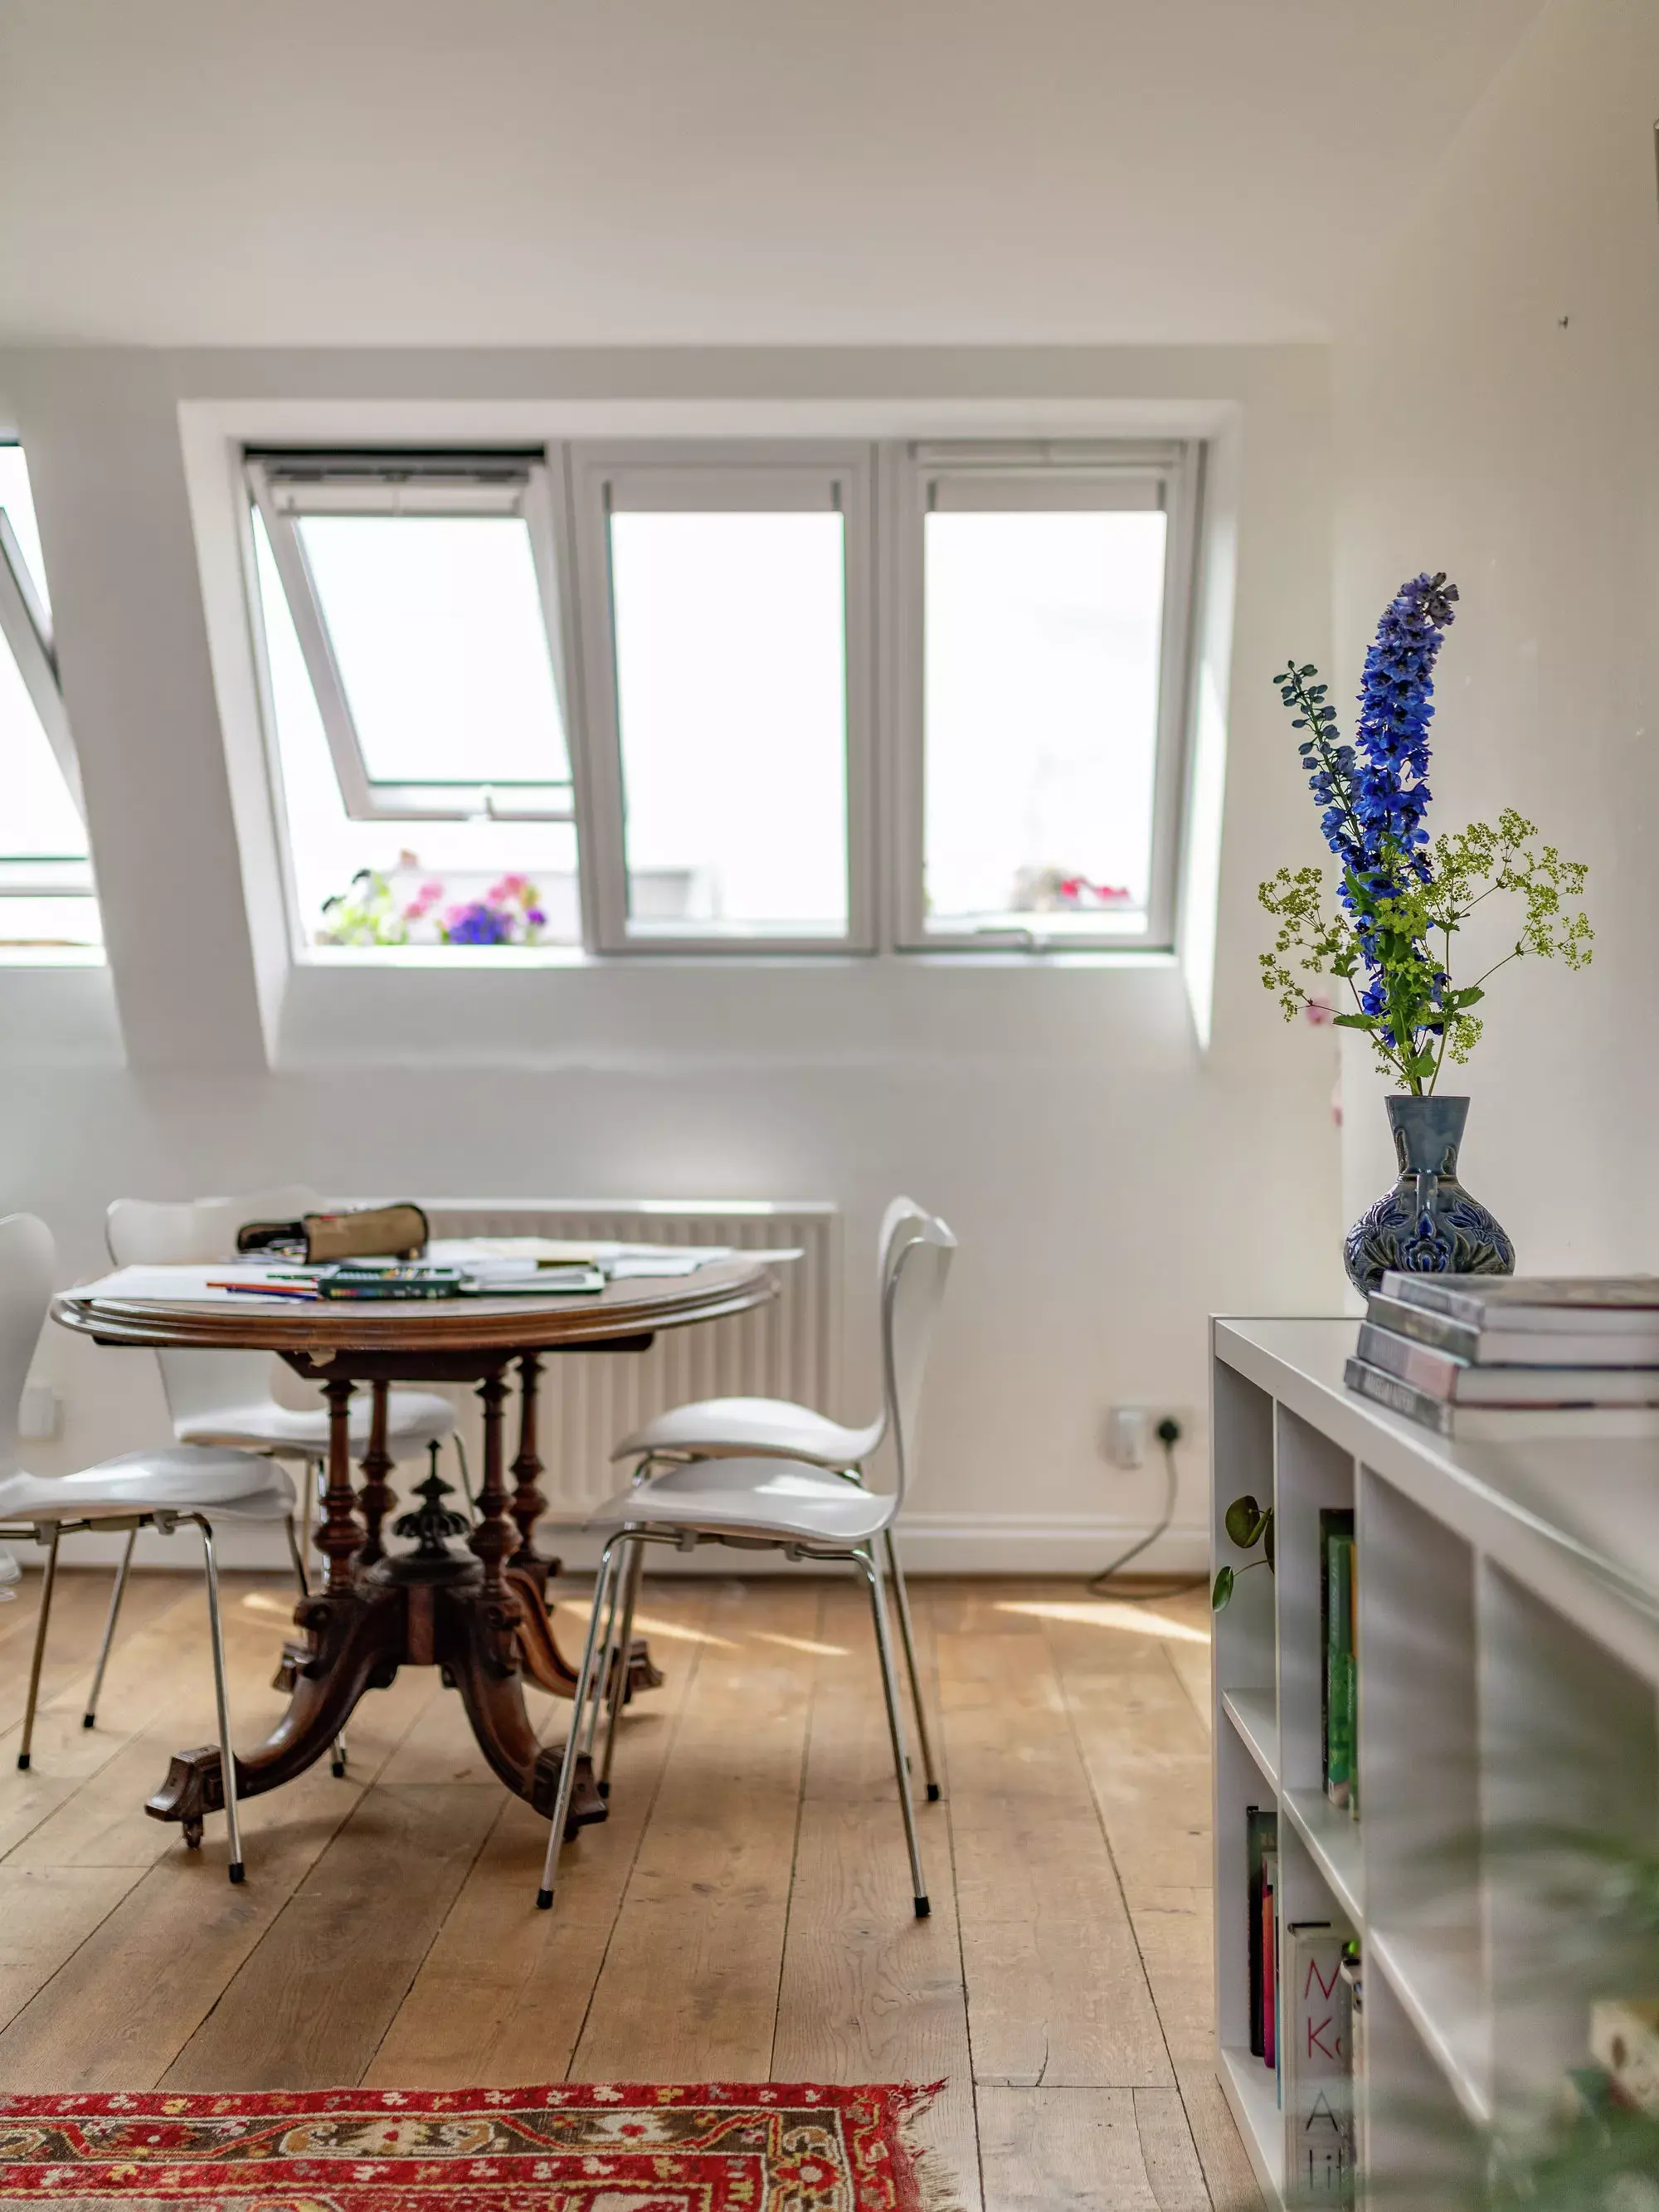 Bureau à domicile dans le comble avec des fenêtres VELUX, une table en bois, des chaises blanches et un tapis rouge.